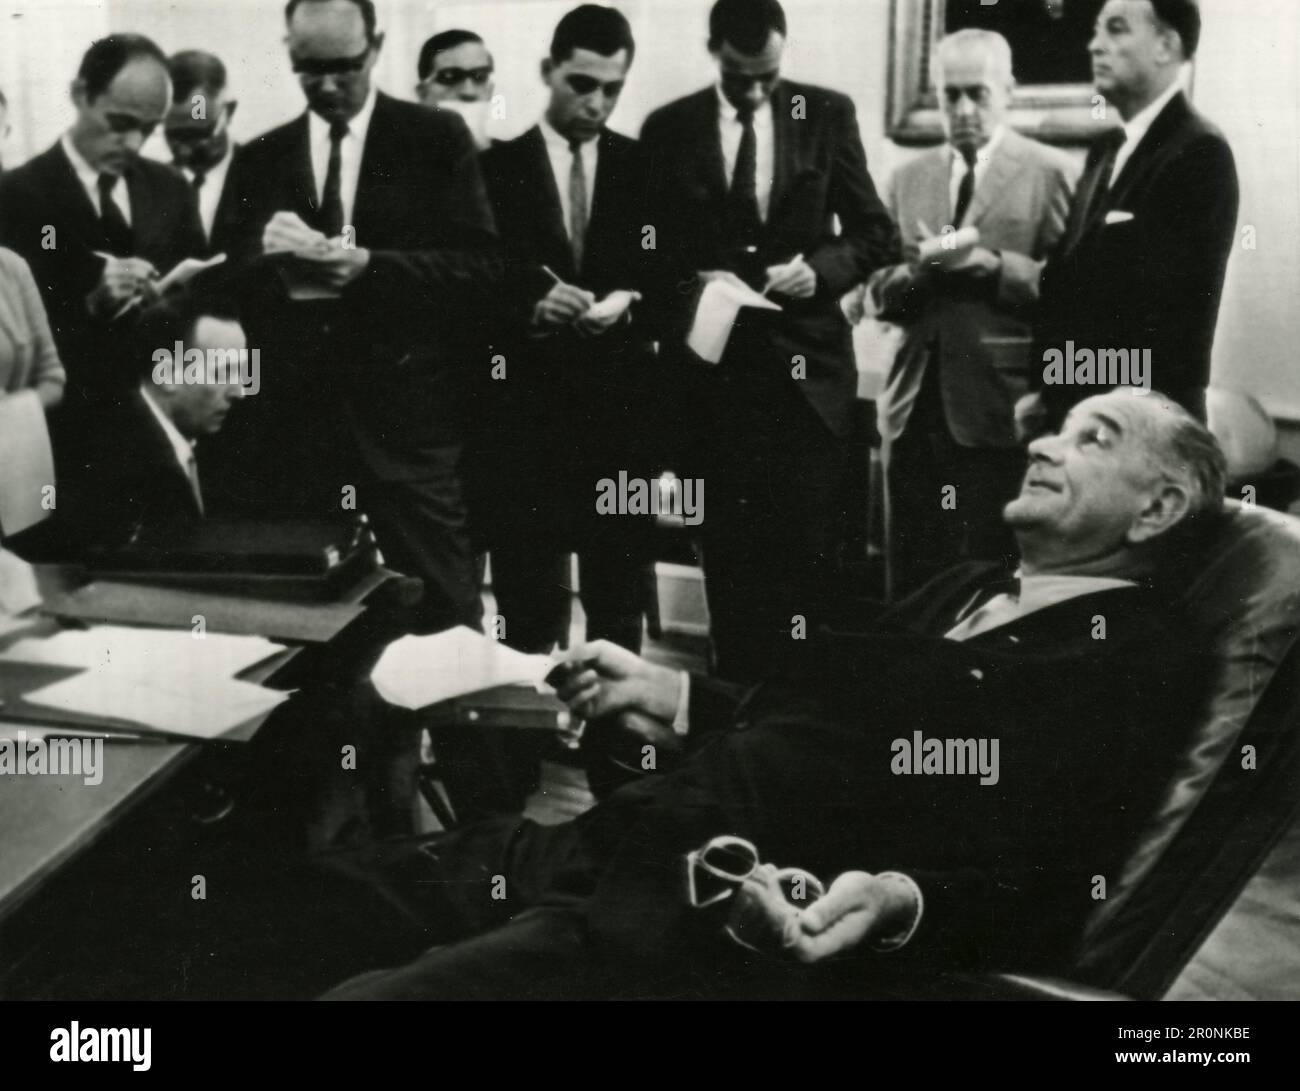 US-Präsident Lyndon Johnson mit Journalisten, Washington, USA 1965 Stockfoto